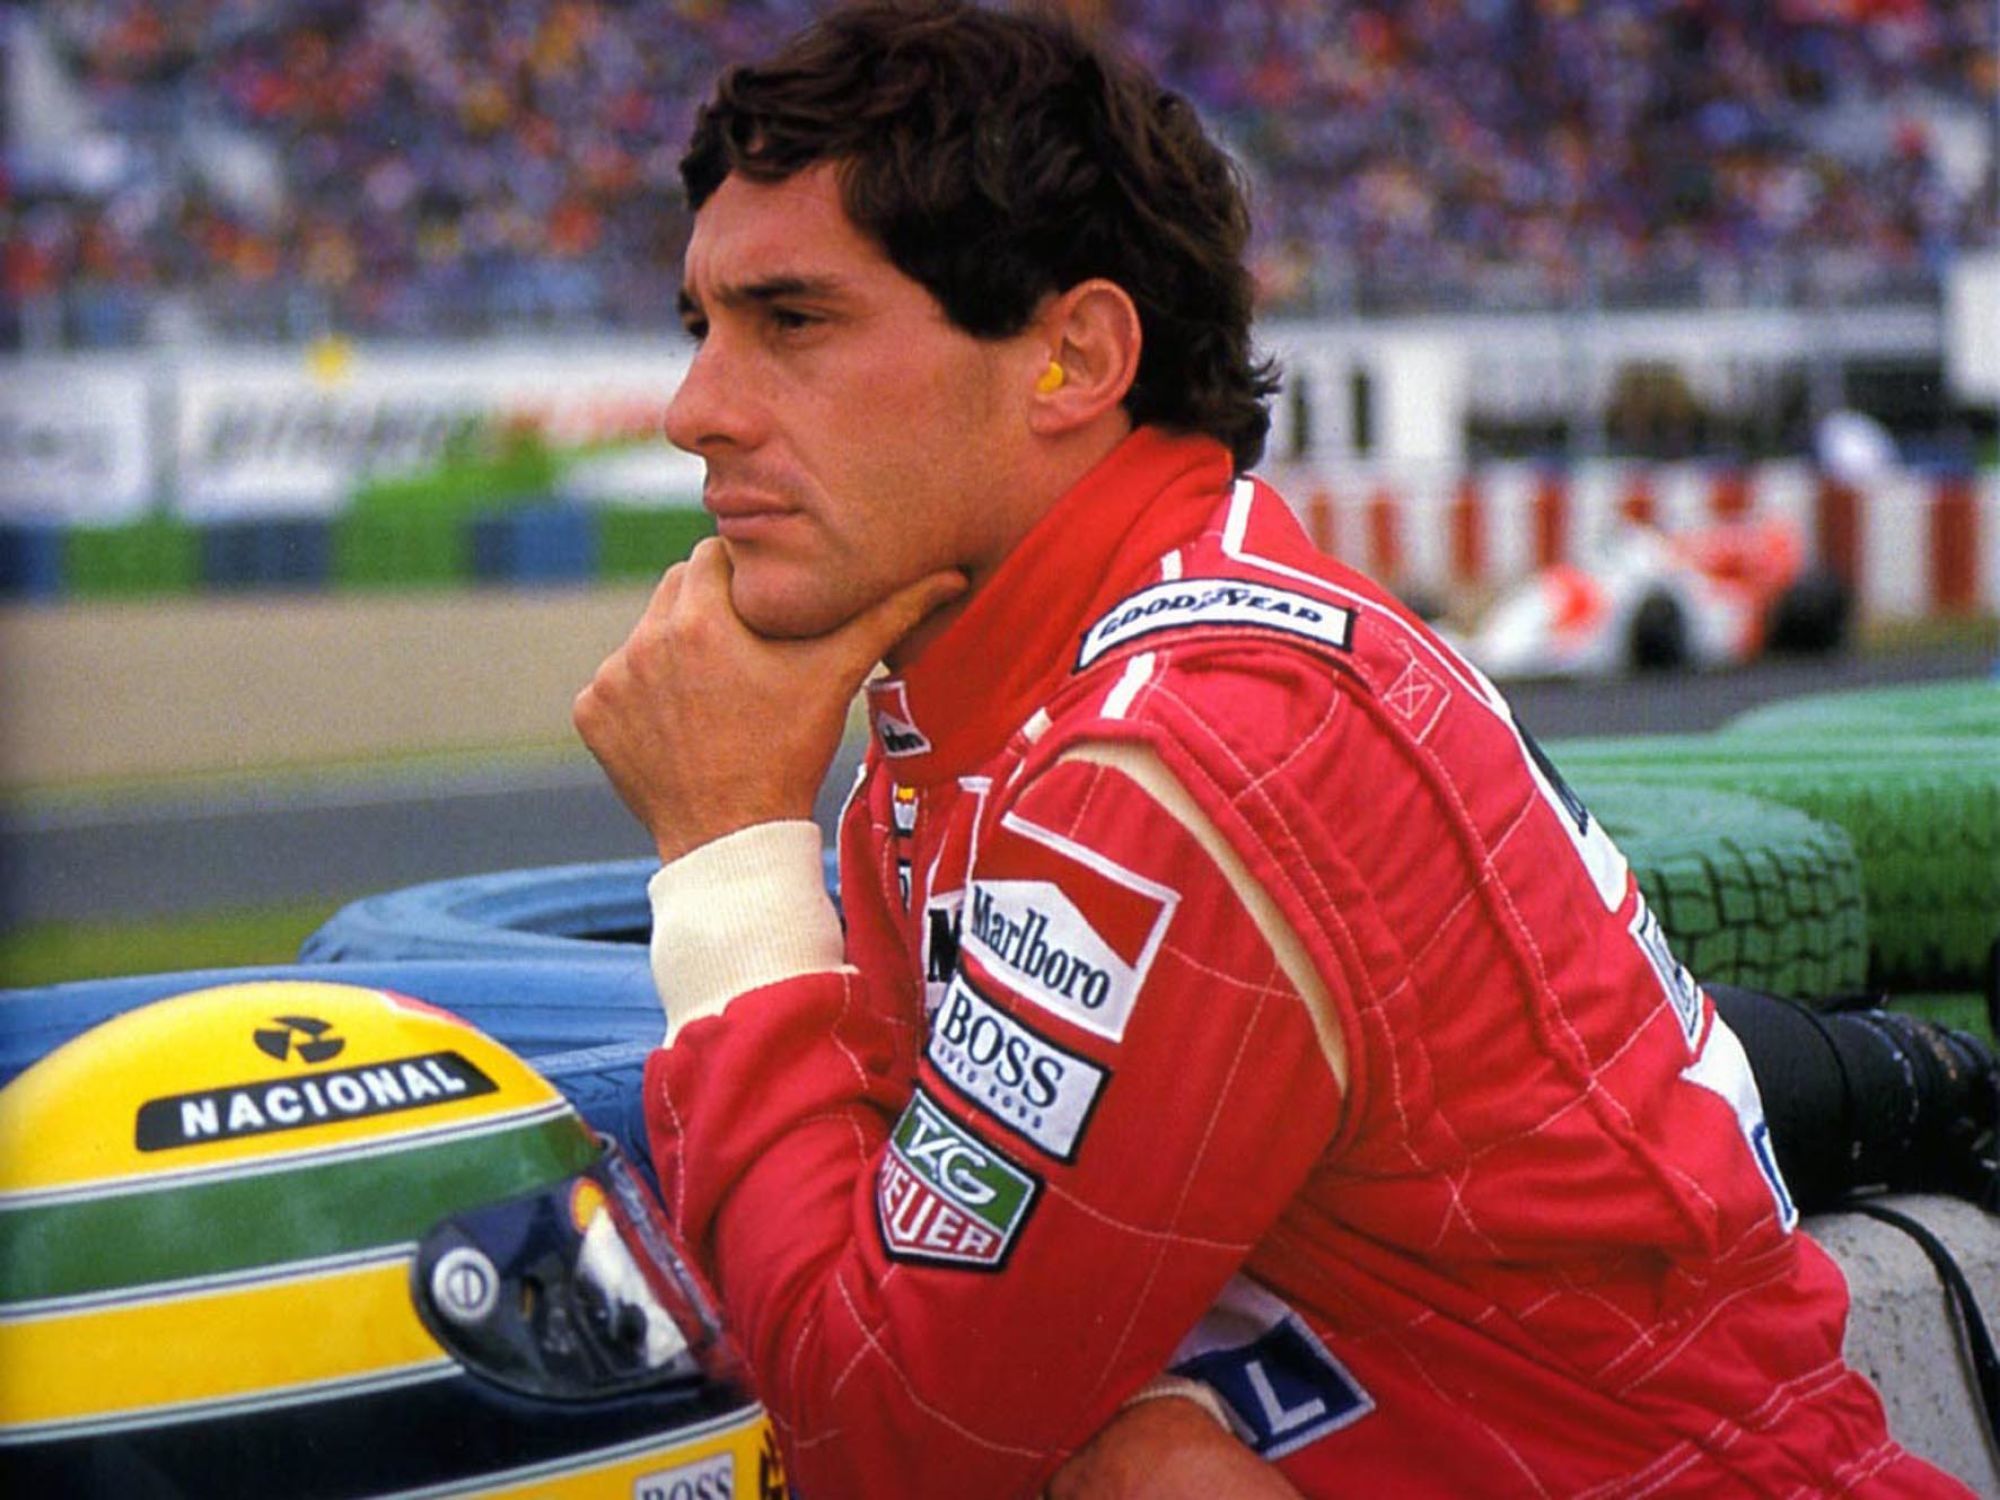 Abandon Ayrton Senna - McLaren - 16.07.1989 -  Grand Prix de Grande Bretagne
Photo